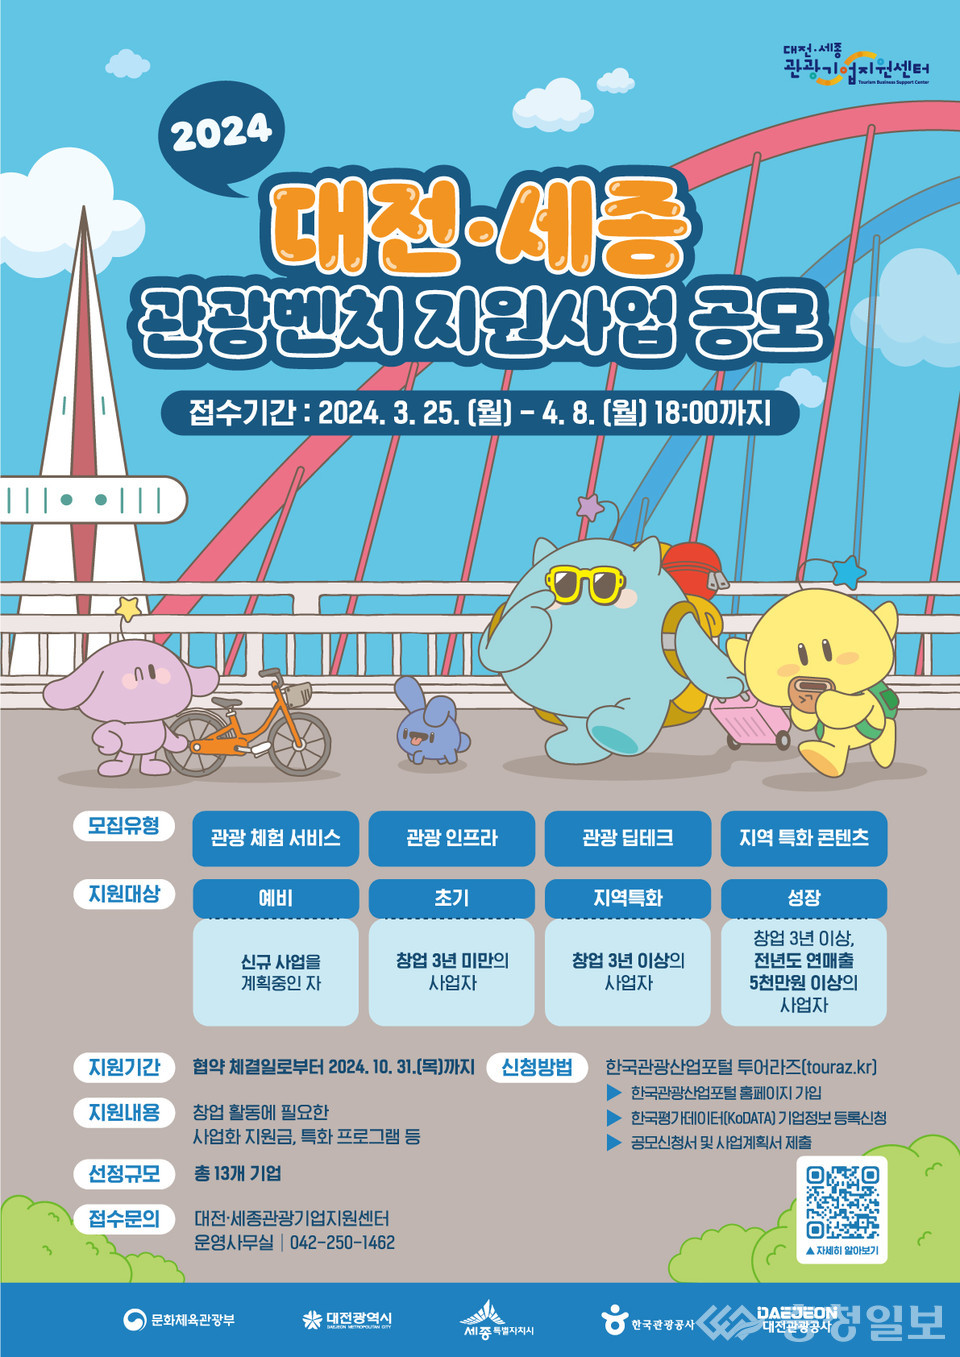 ▲ 2024 대전세종 관광벤처 지원사업 공모 포스터